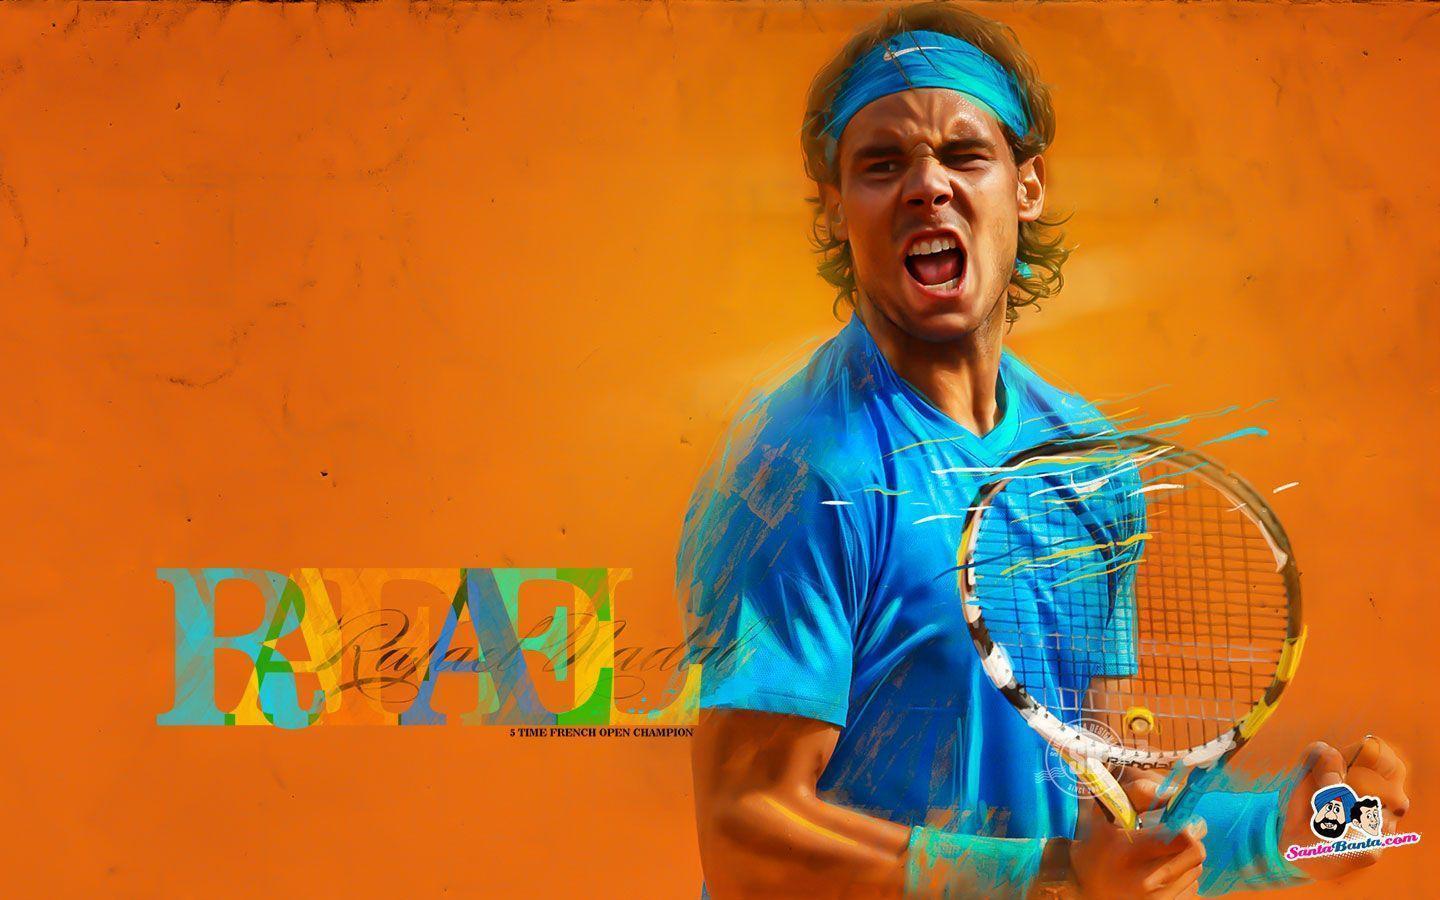 Rafael Nadal Wallpaper, Rafael Nadal Full HD Image Download